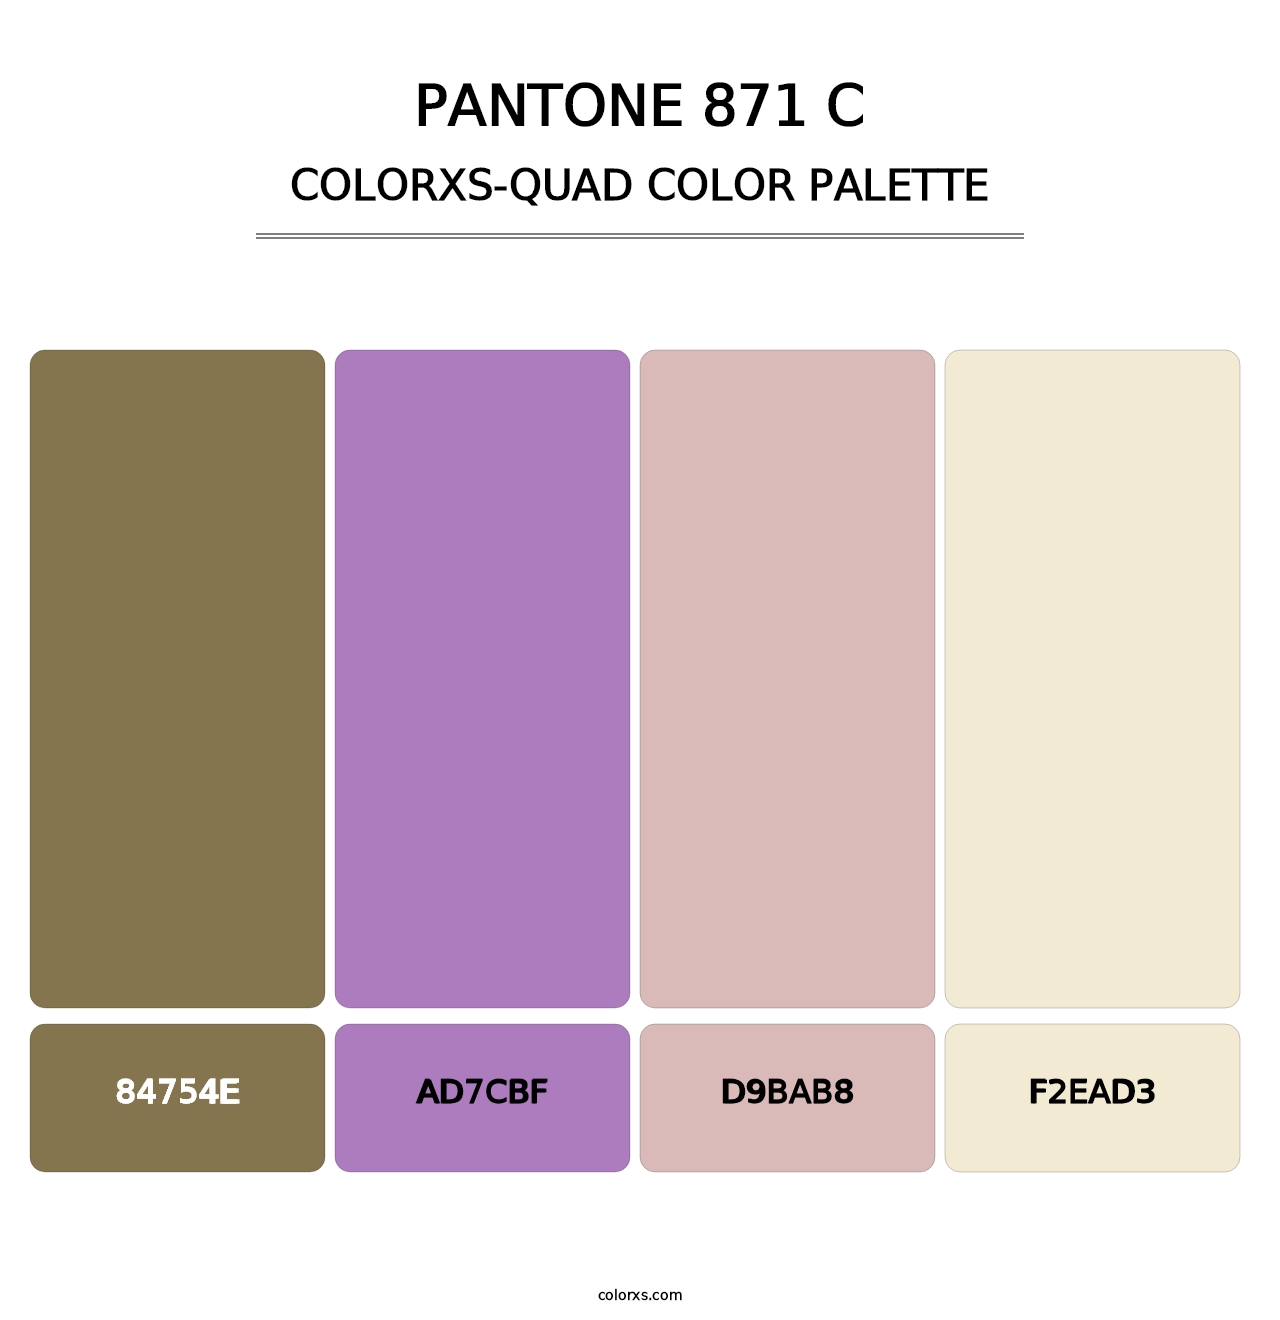 PANTONE 871 C - Colorxs Quad Palette